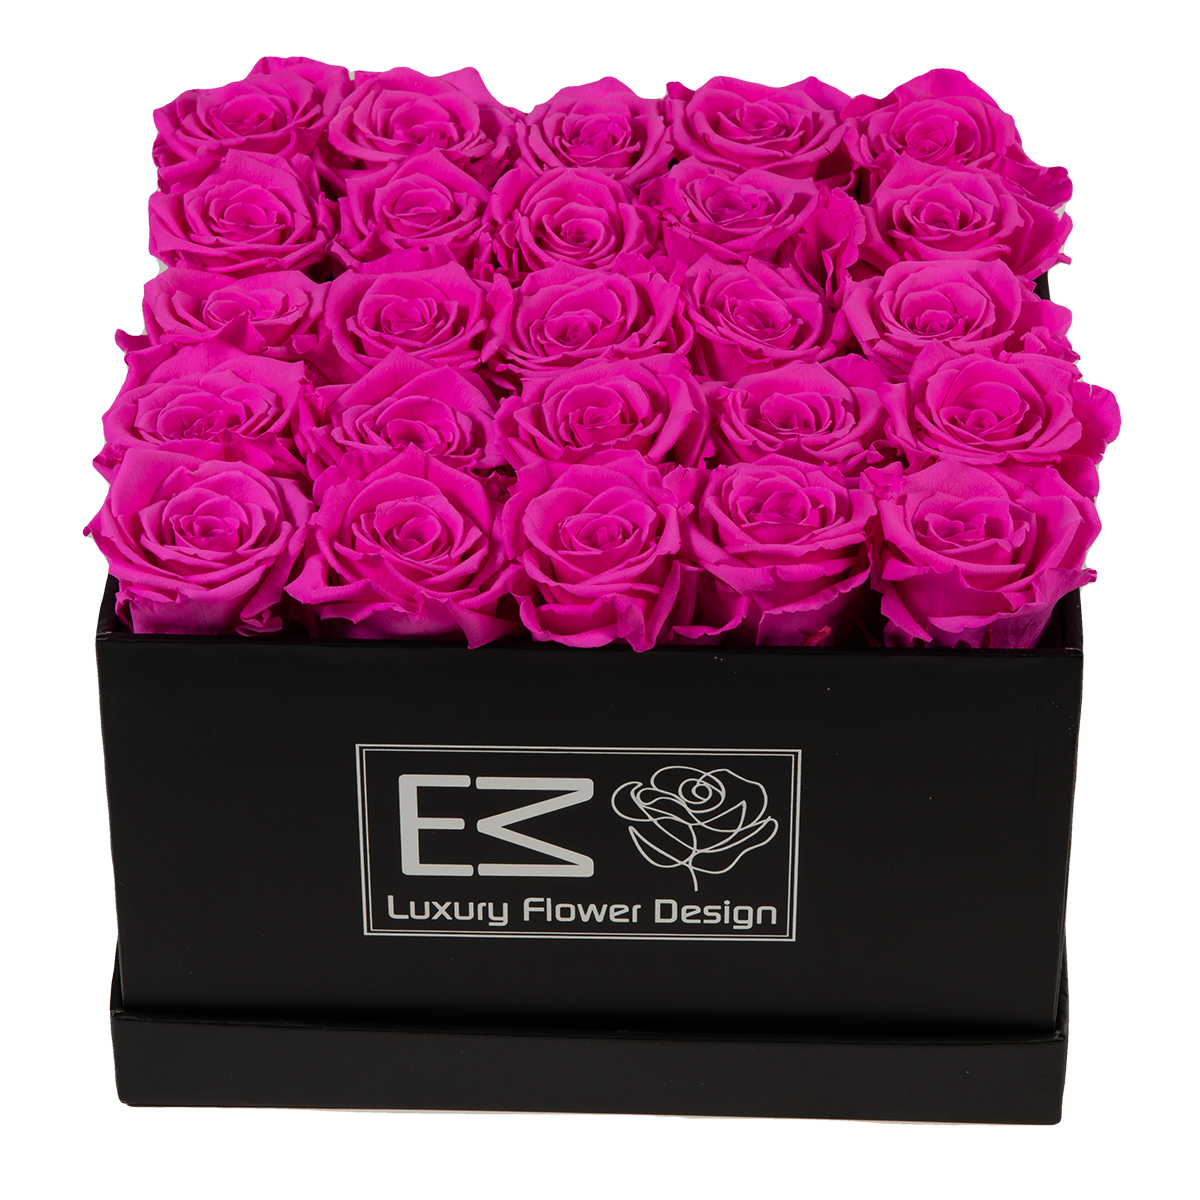 Longlife Flower - E&M Luxury Flower Design